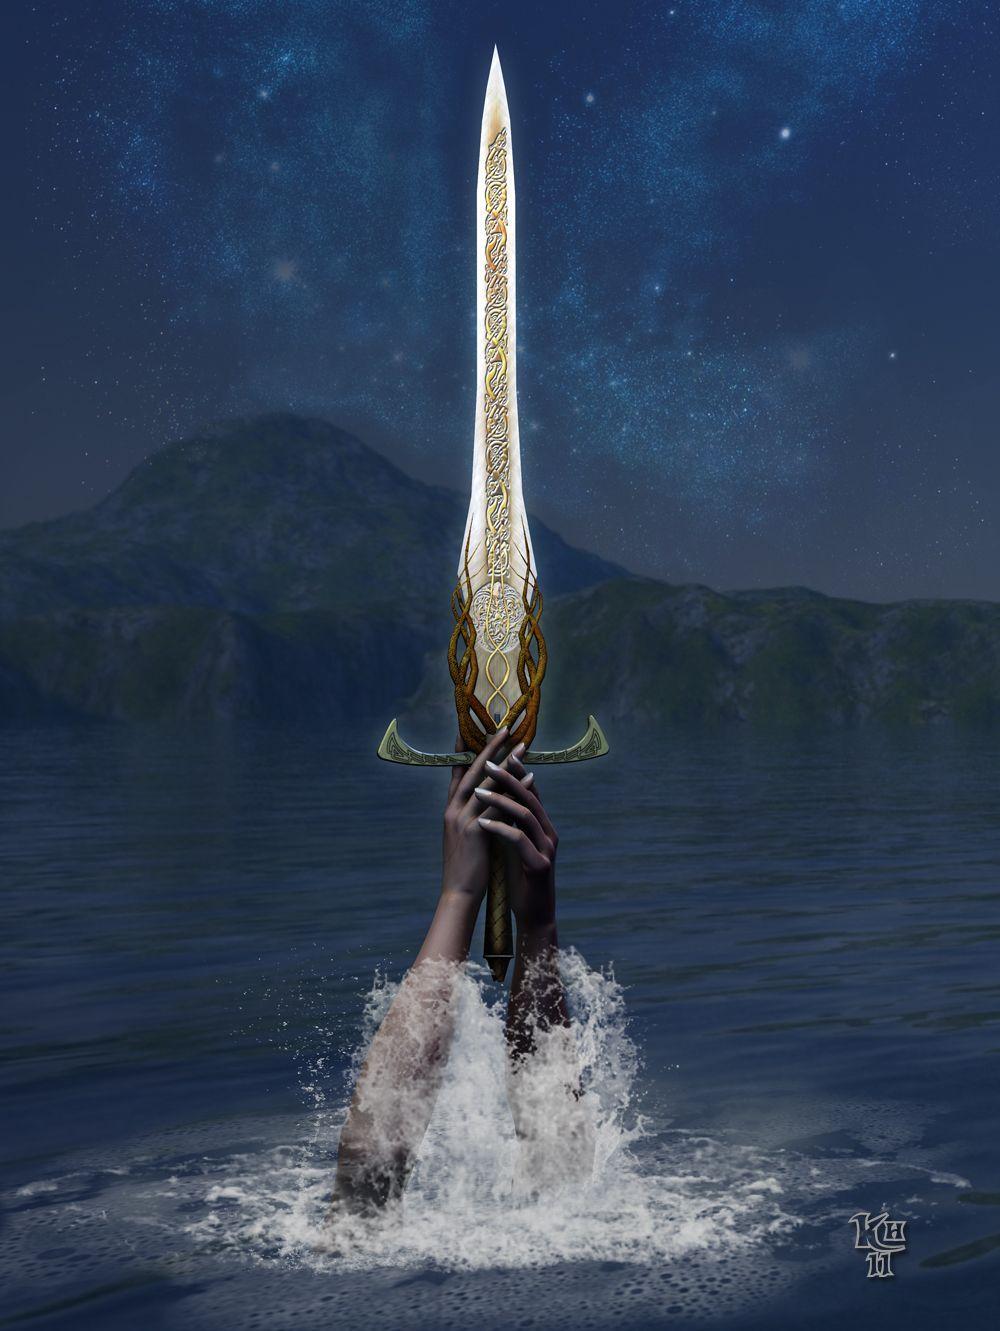 Excalibur by Erulian- Excalibur, the legendary sword of King